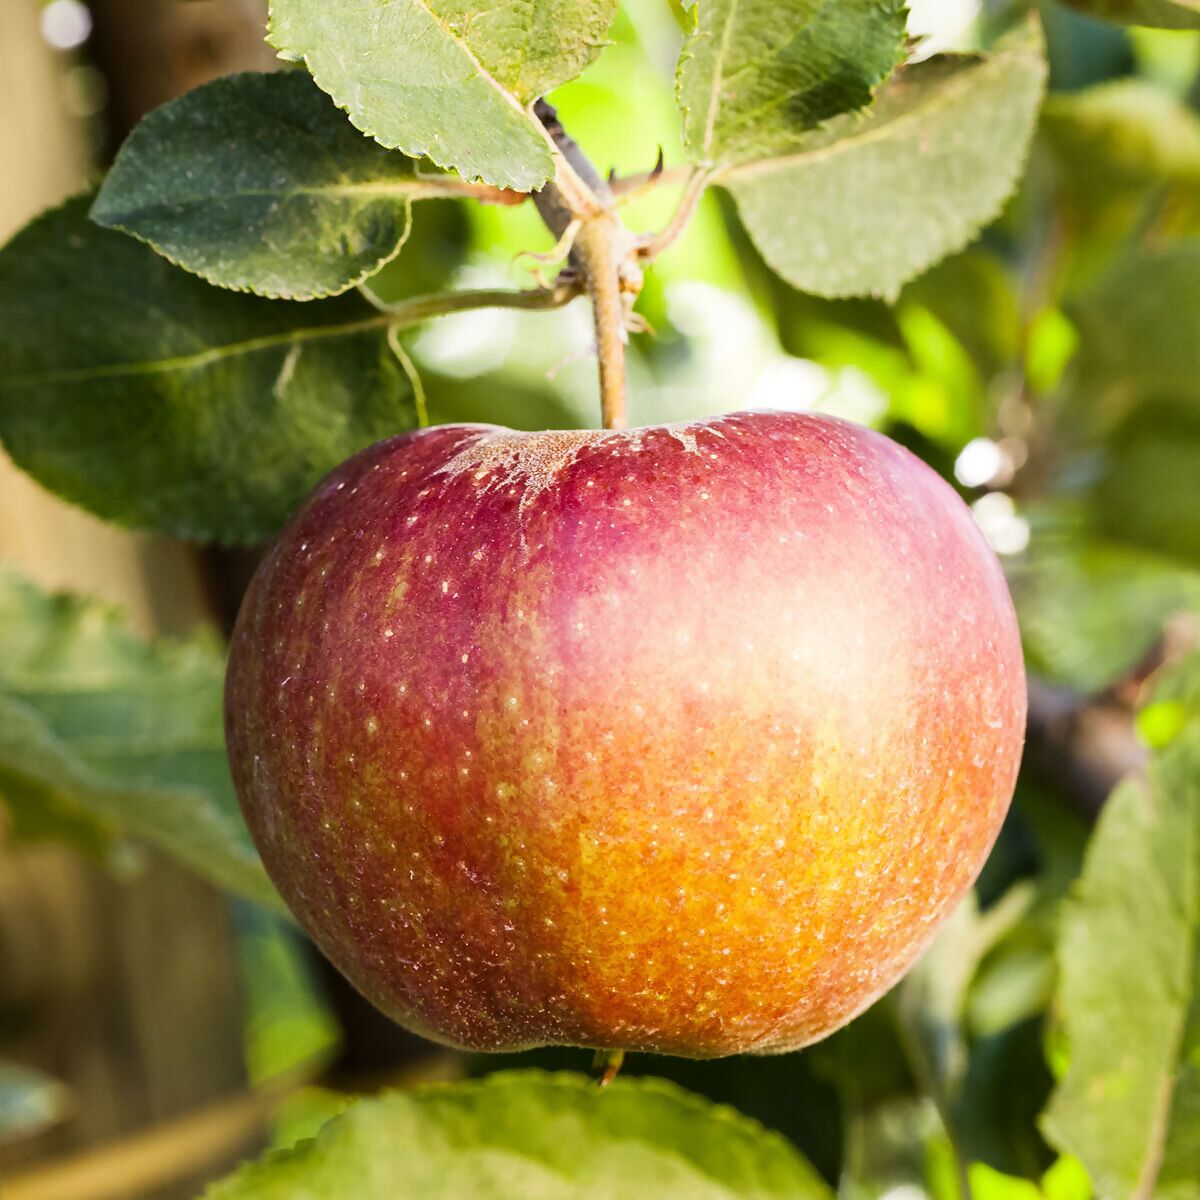 BIO Apfel James Grieve online kaufen bei Gärtner Pötschke